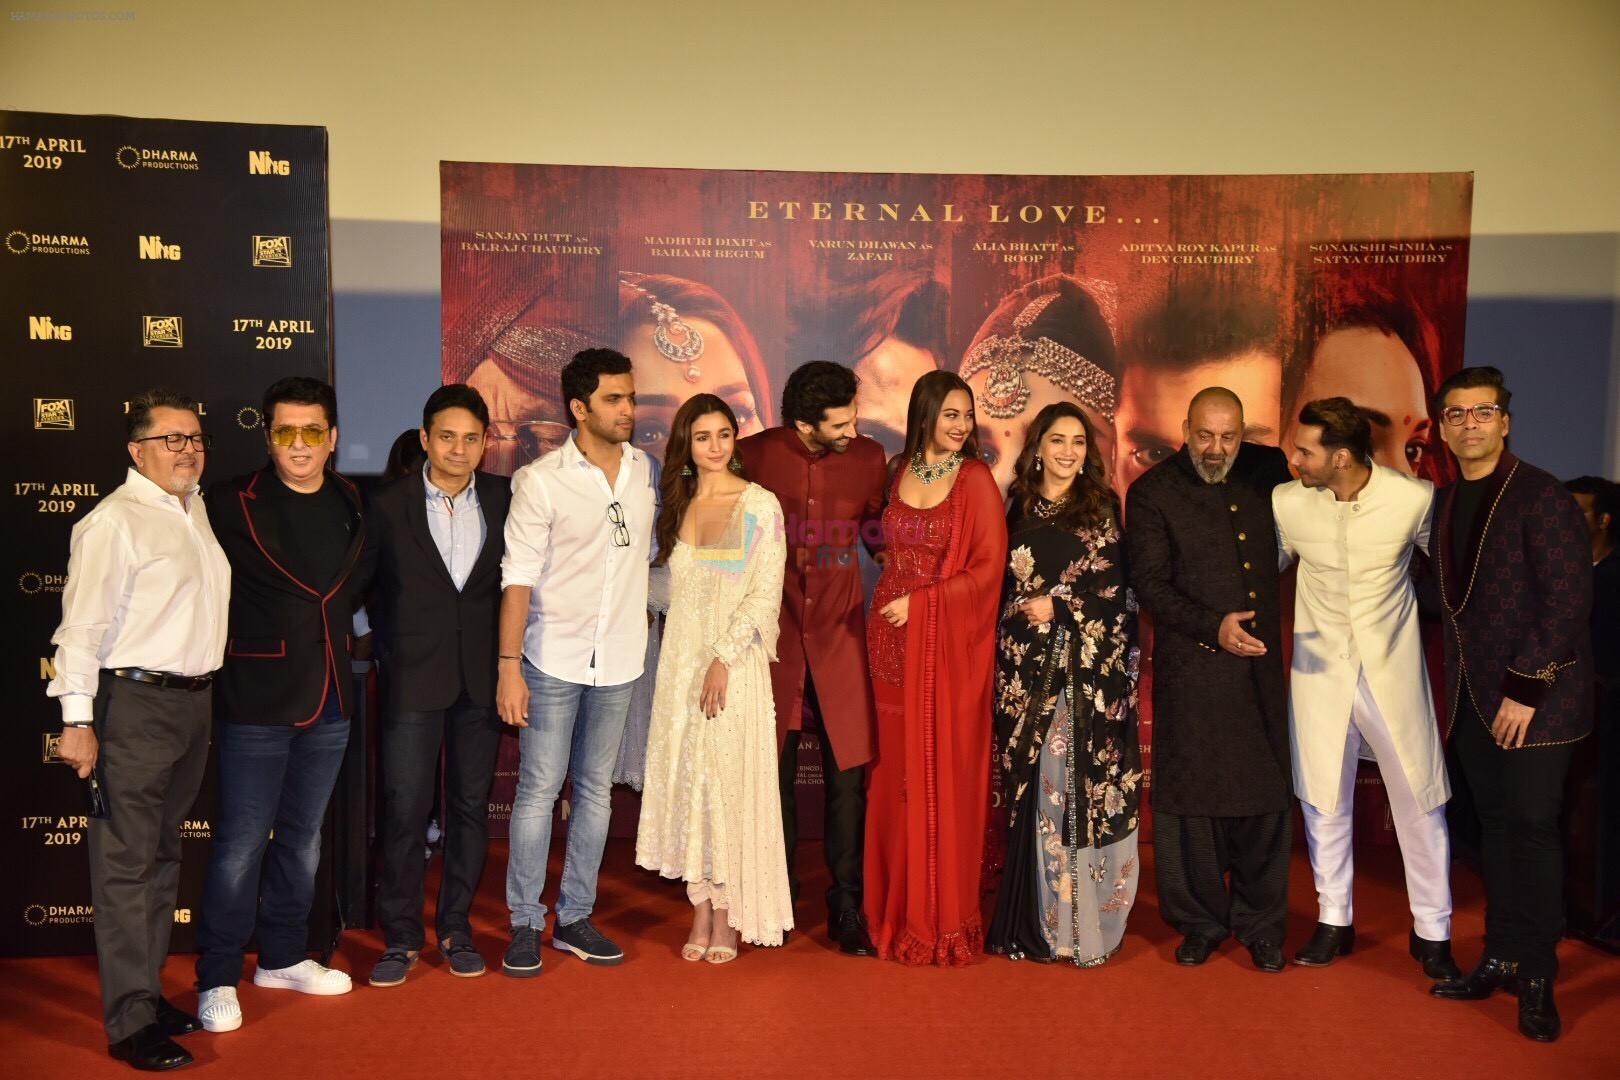 Alia Bhatt, Varun Dhawan, Sanjay Dutt, Sonakshi Sinha, Aditya Roy Kapoor, Madhuri Dixit, Karan Johar, Sajid Nadiadwala at the Teaser launch of KALANK on 11th March 2019